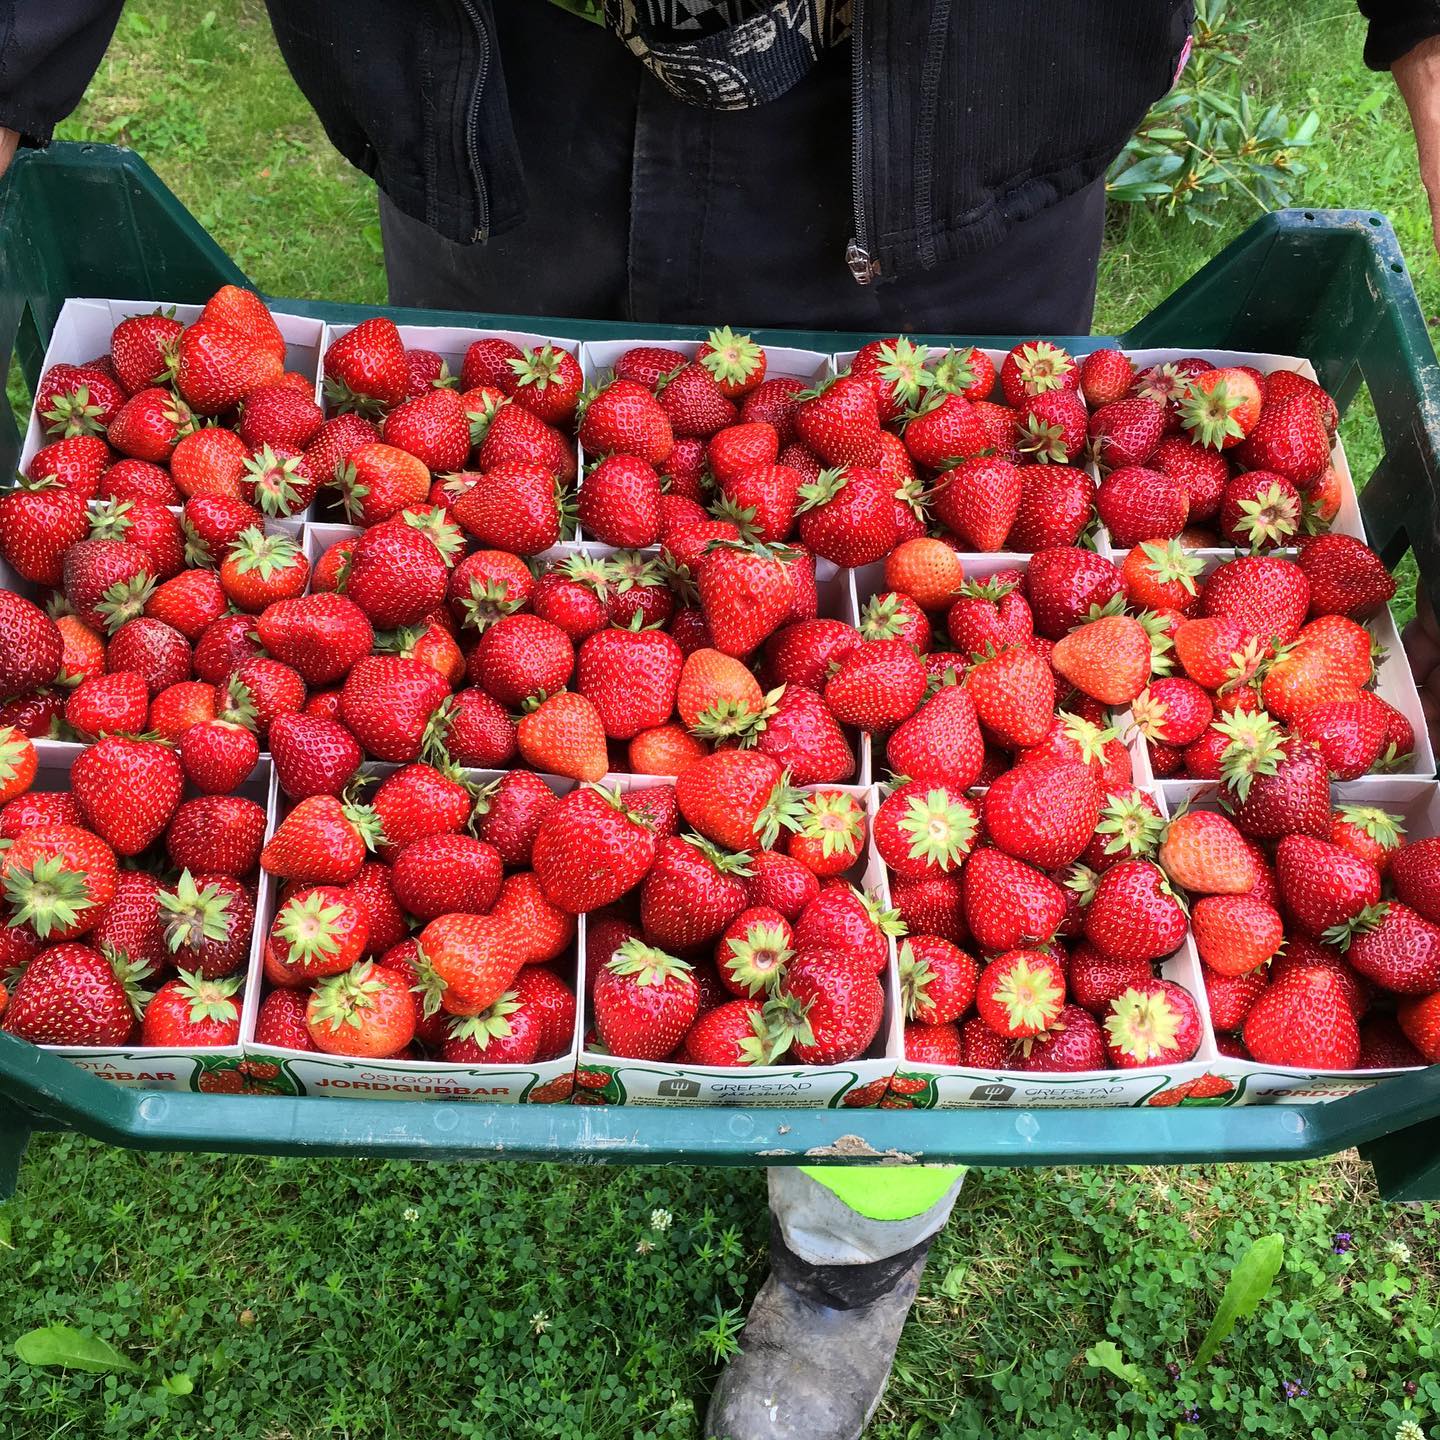 En back innehållandes 15 kartonger med knallröda jordgubbar.